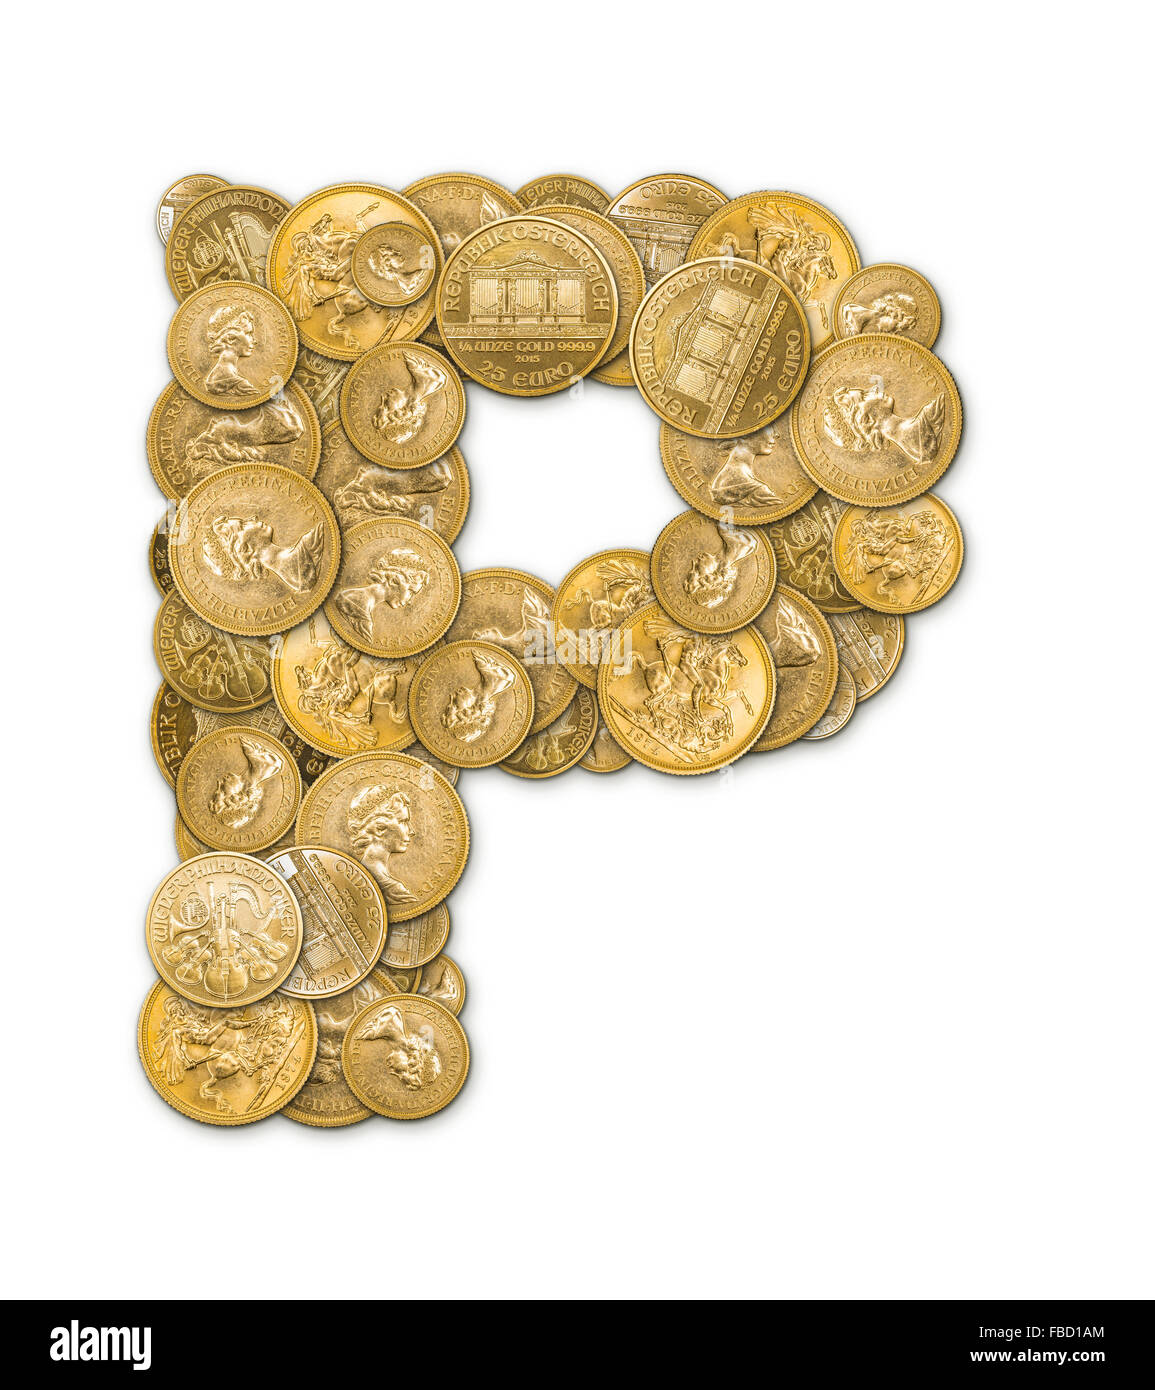 Lettre P fabriqués à partir de pièces d'or argent isolé sur fond blanc Banque D'Images